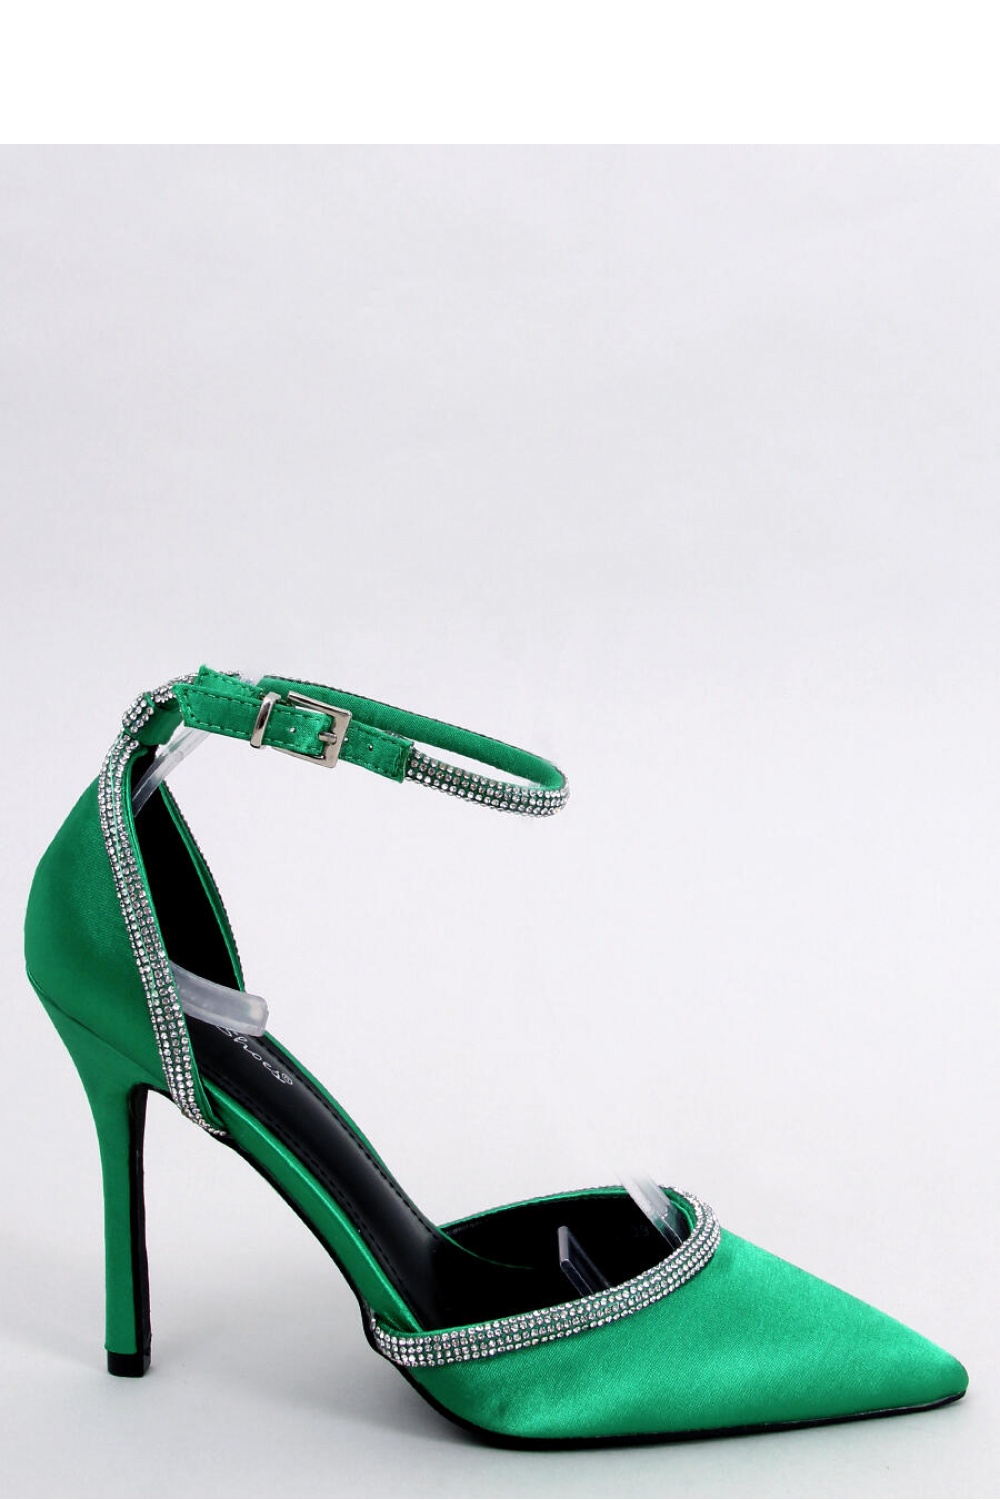 High heels model 179879 Inello